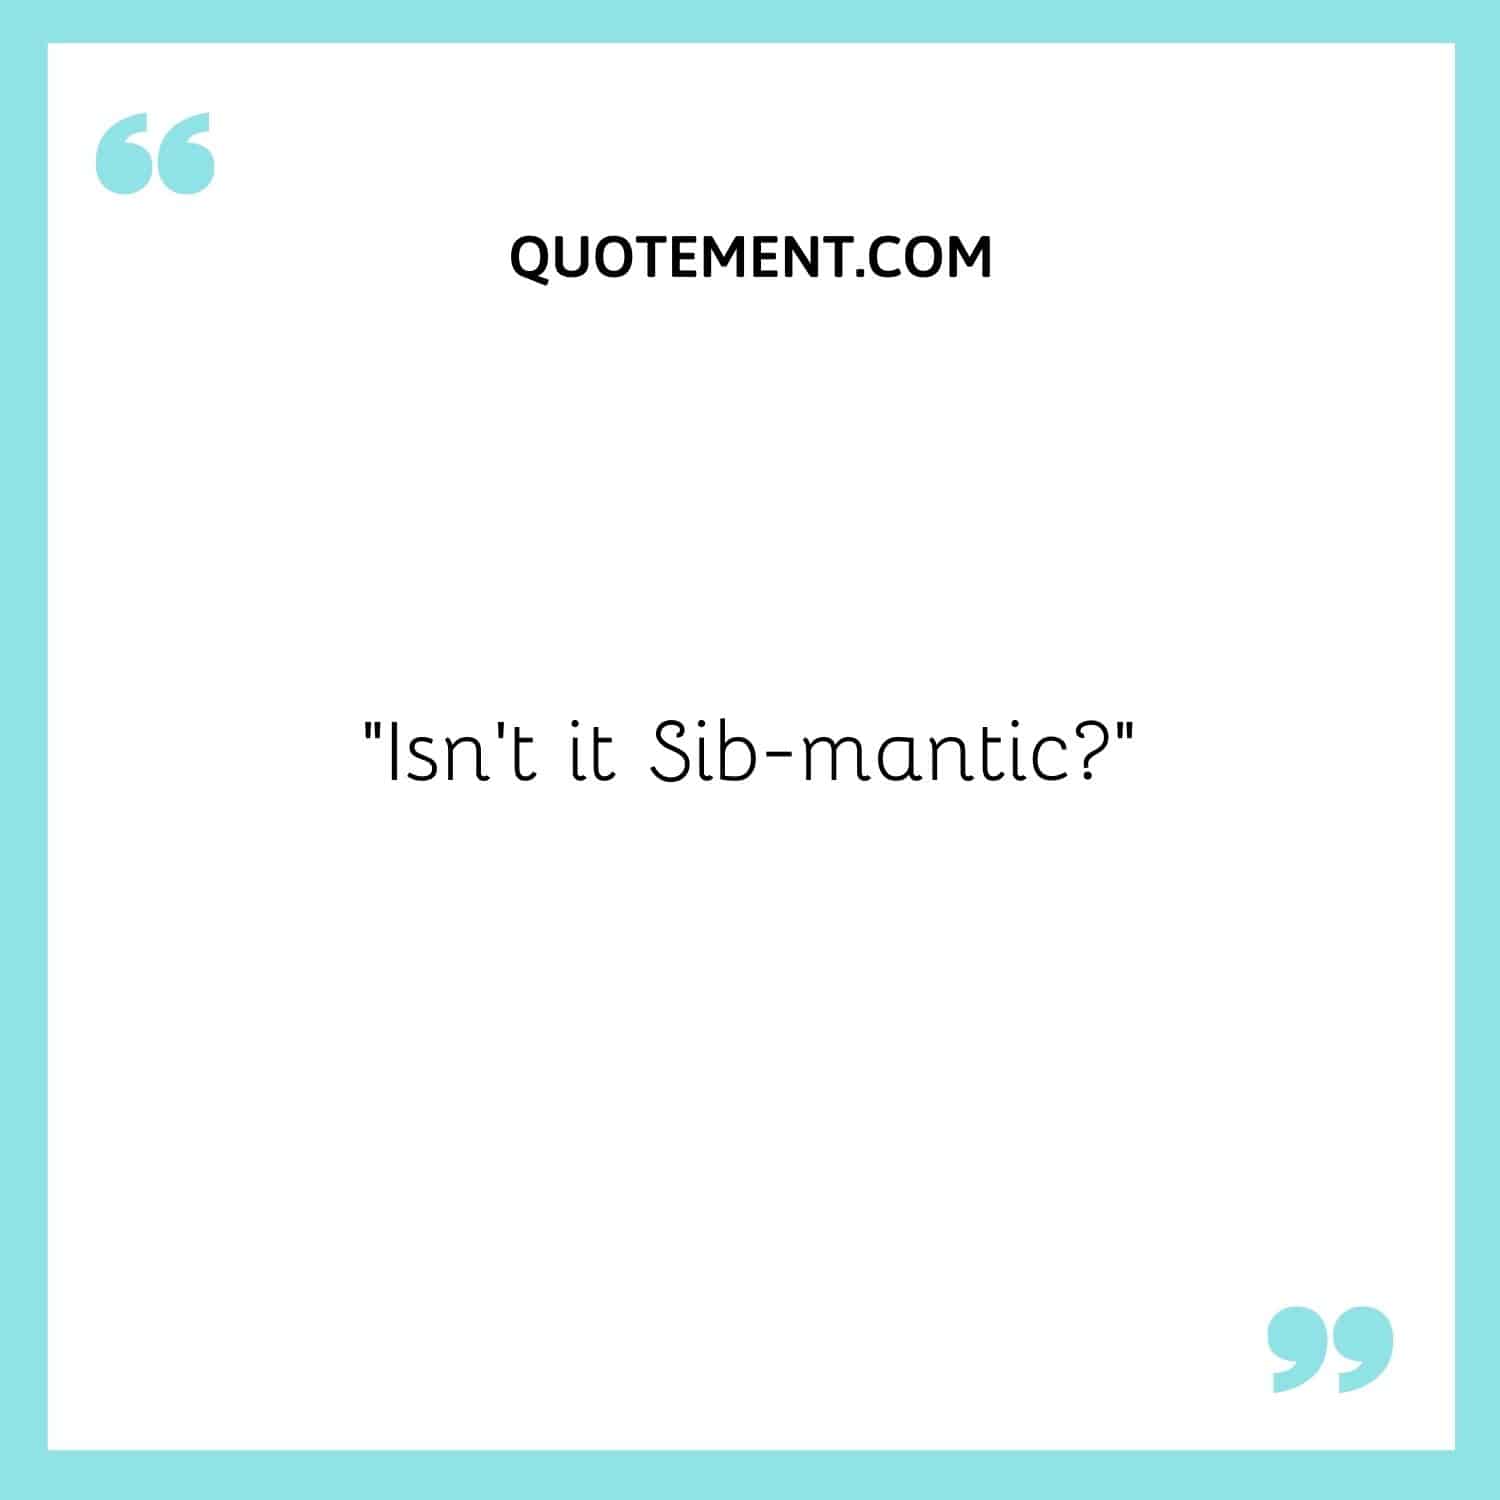 Isn't it Sib-mantic